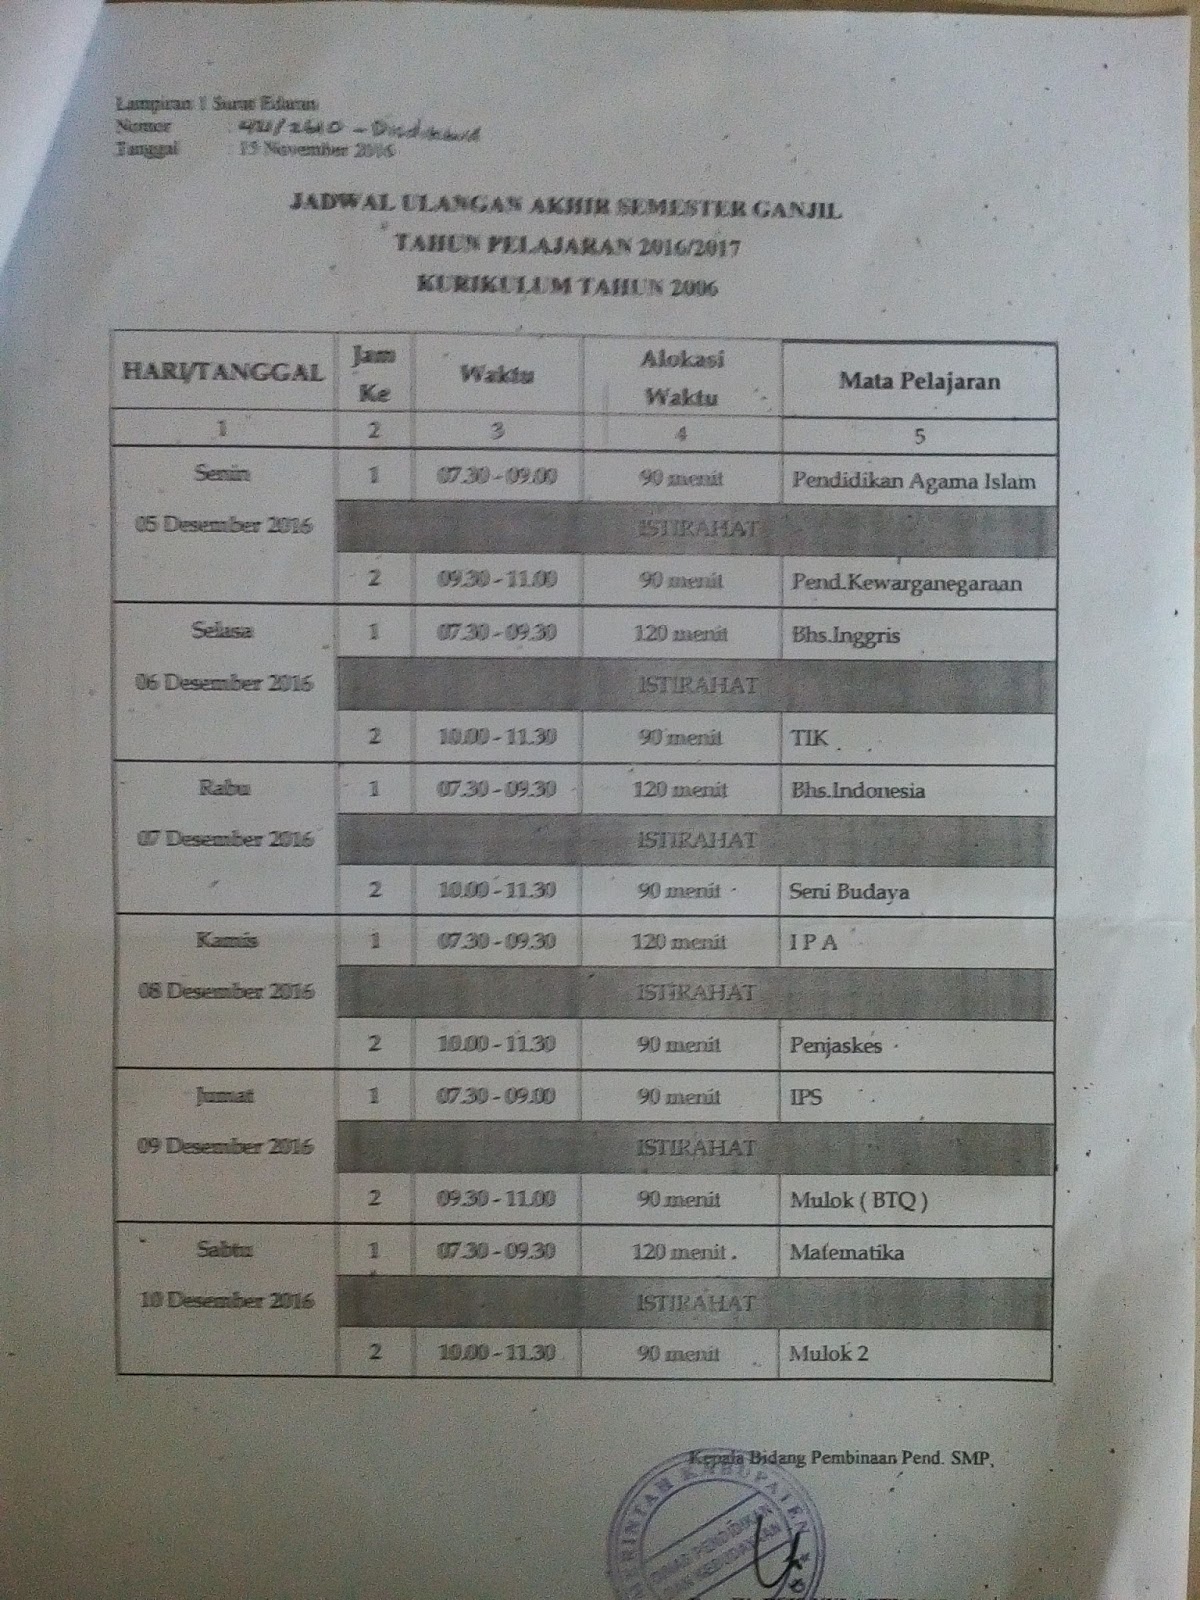 Selanjutnya untuk jadwal ulangan dibedakan menjadi dua jadwal karena di Kabupaten Serang masih menggunakan dua kurikulum yang berbeda yaitu Kurikulum Tahun